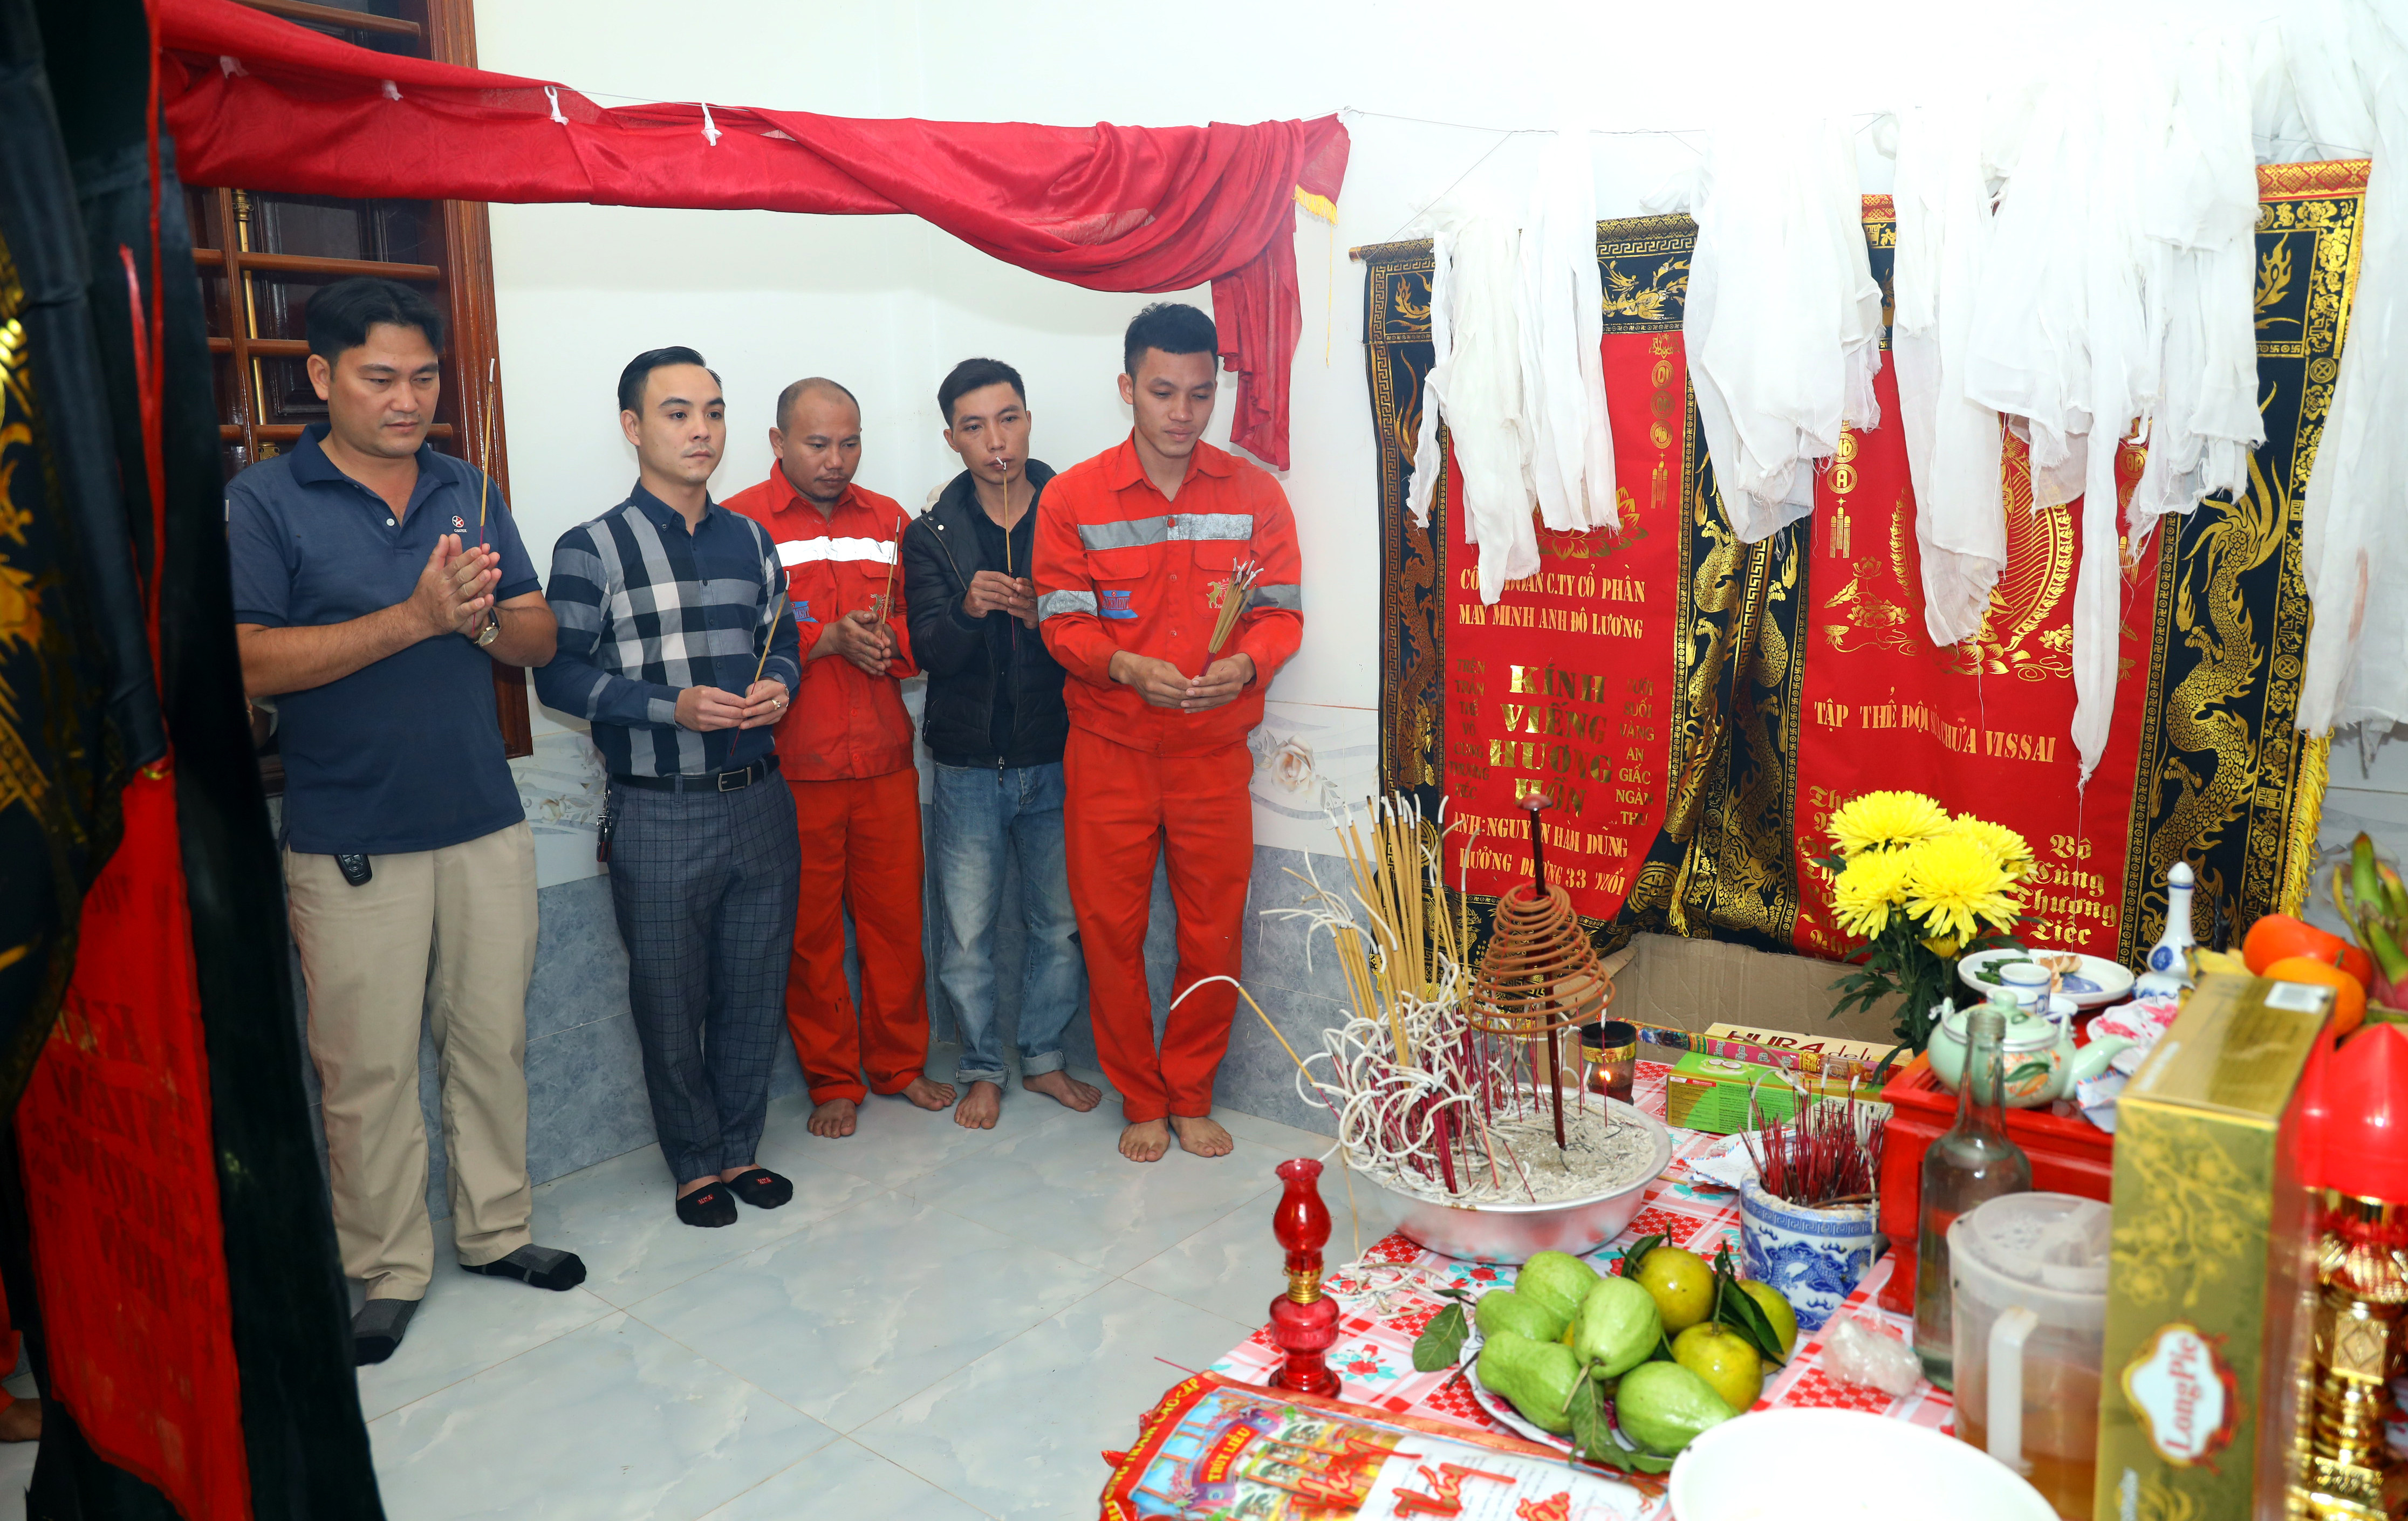 Đoàn thanh niên Công ty CP Xi măng Sông Lam, đại diện Nhà máy Xi măng Đô Lương thắp hương tưởng nhớ anh Nguyễn Hàm Dũng. Ảnh Nguyên Nguyên 